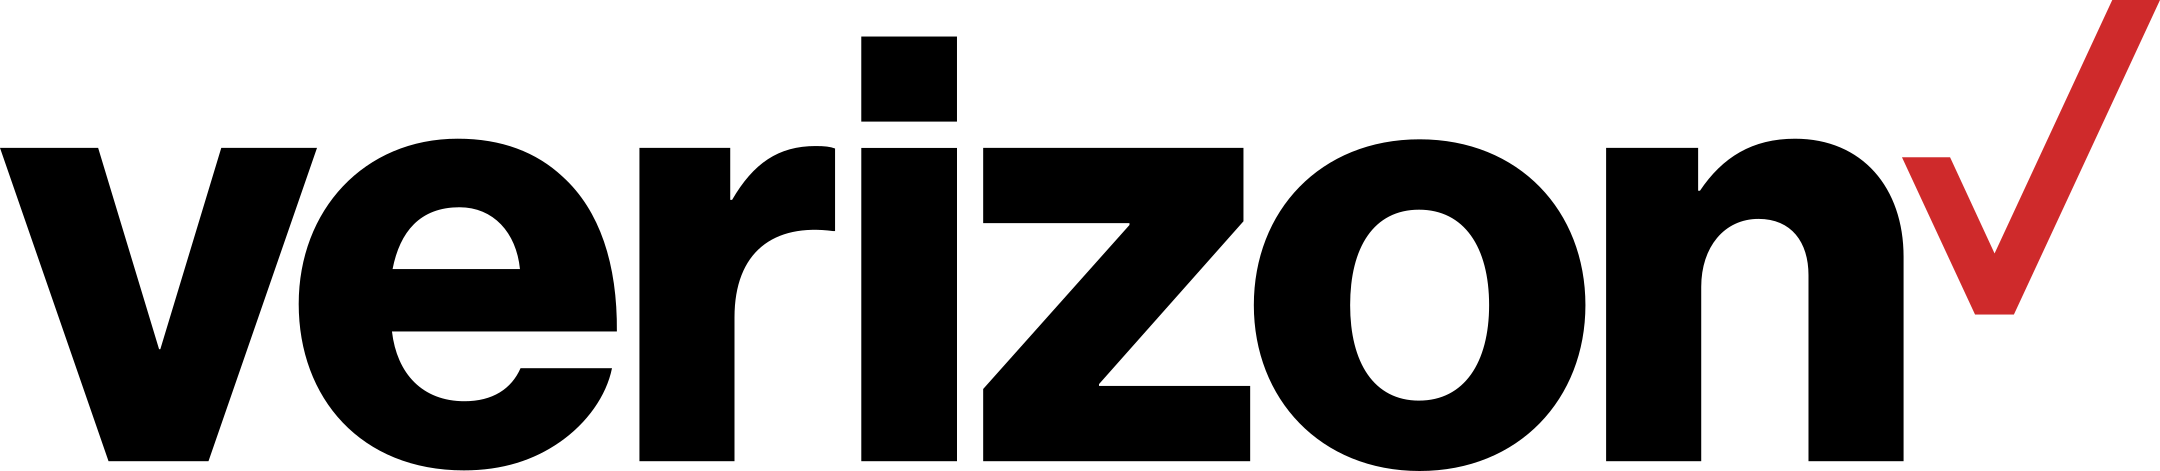 verizon logo 1 - Verizon Logo